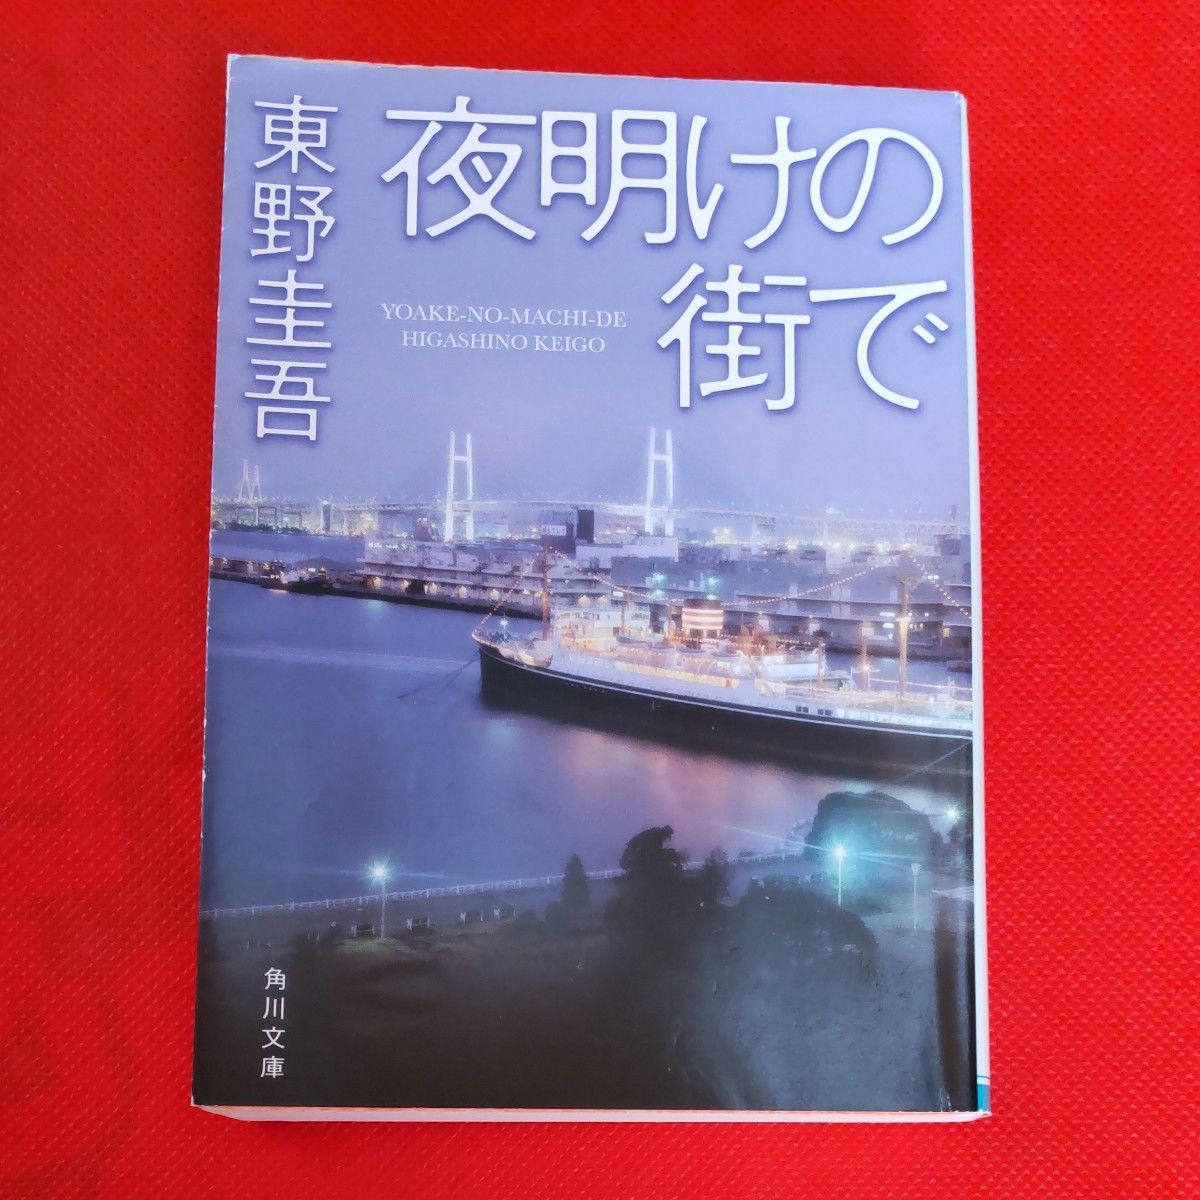 夜明けの街で 　東野圭吾　他の本と「文庫本バラ売り」としても出品しております。ご検討ください。